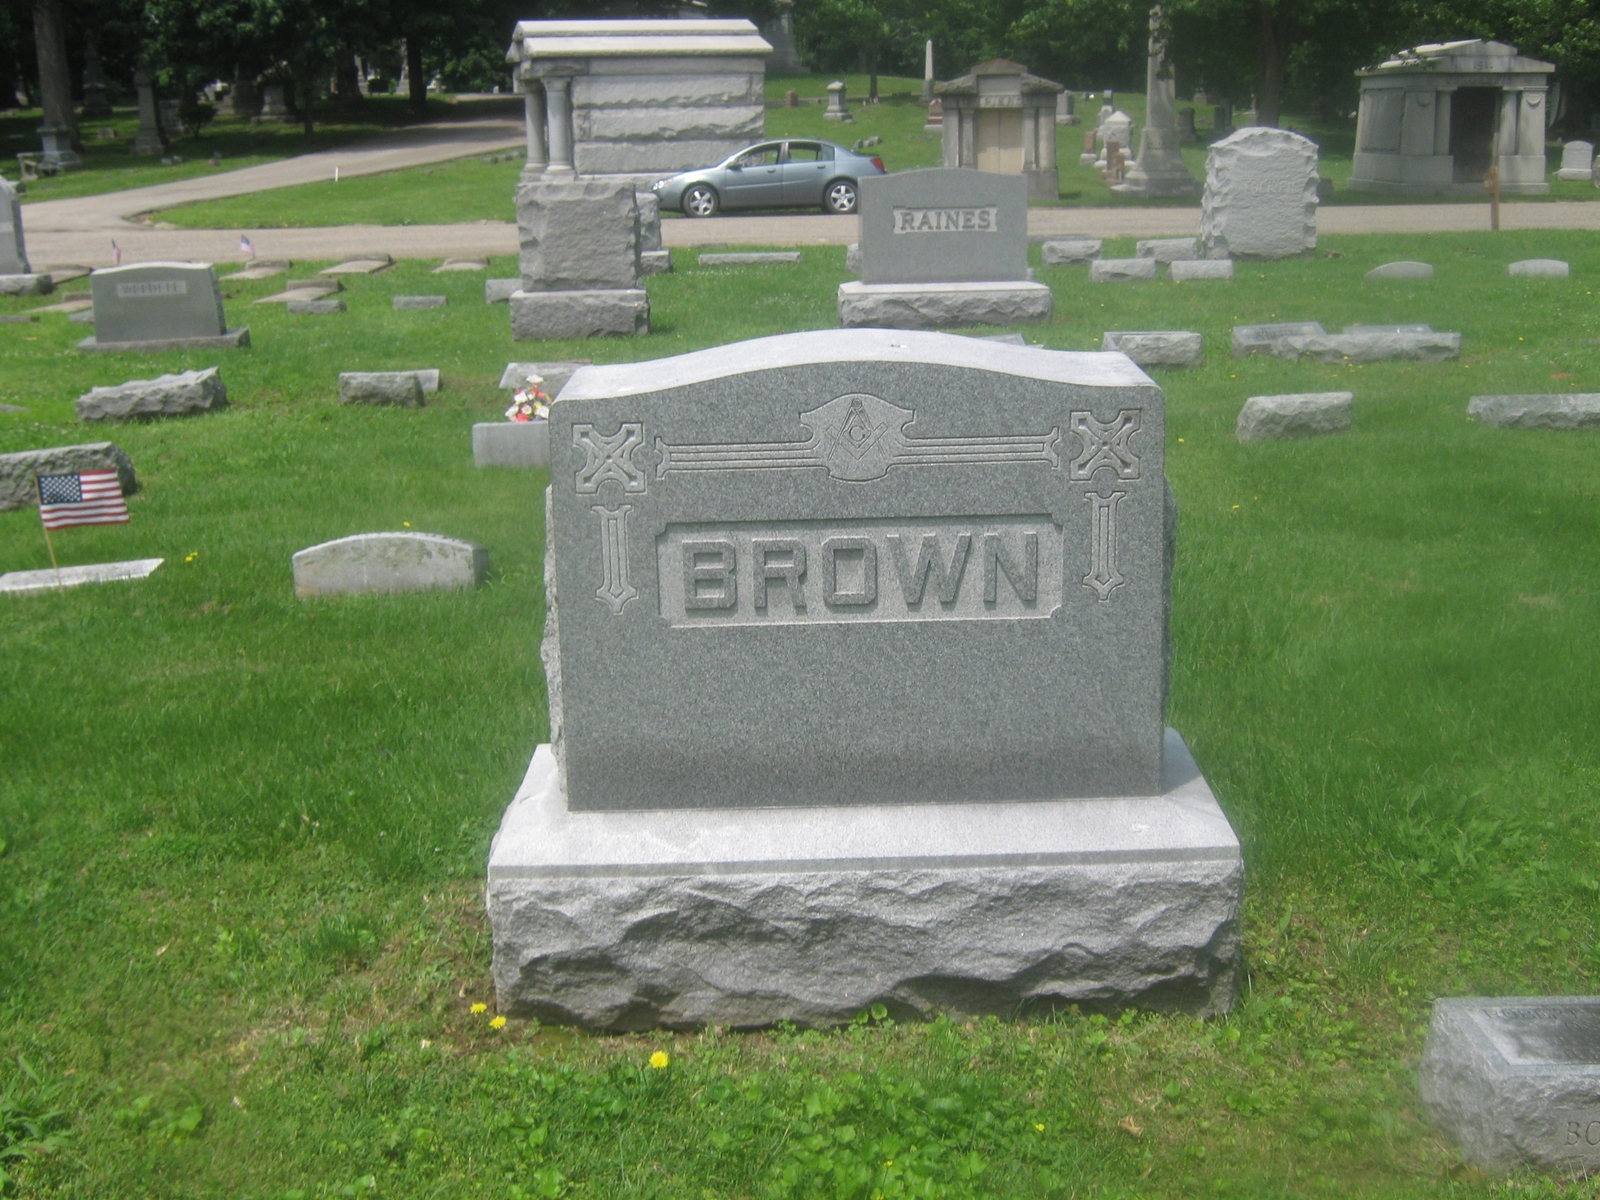 Charles C Brown